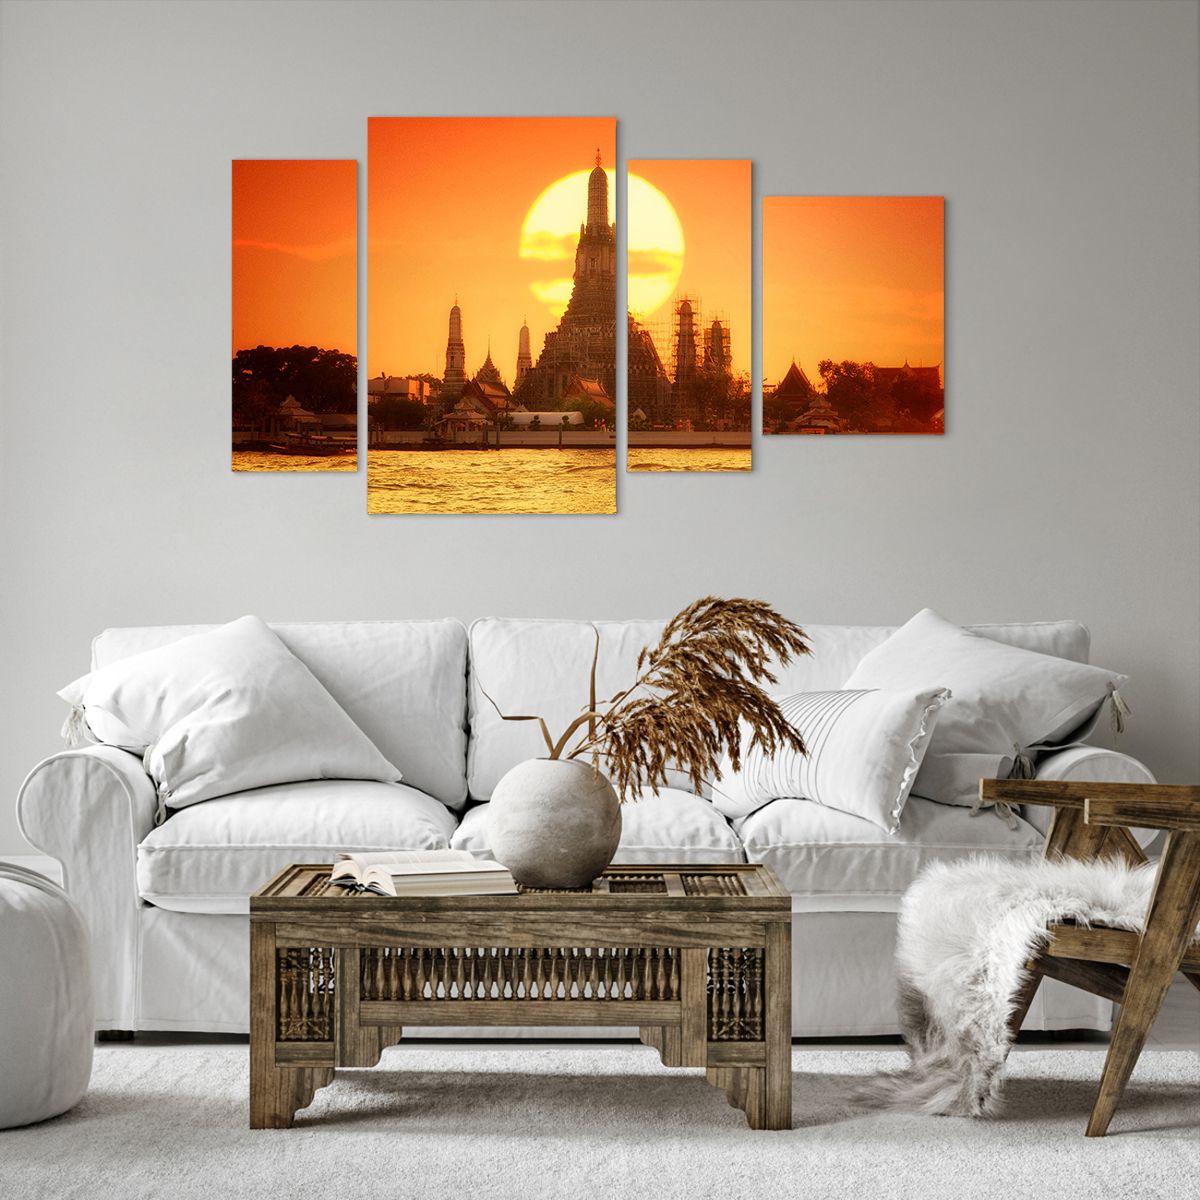 Bild auf Leinwand Bangkok, Bild auf Leinwand Tempel Der Morgenröte, Bild auf Leinwand Thailand, Bild auf Leinwand Sonne, Bild auf Leinwand Buddhismus